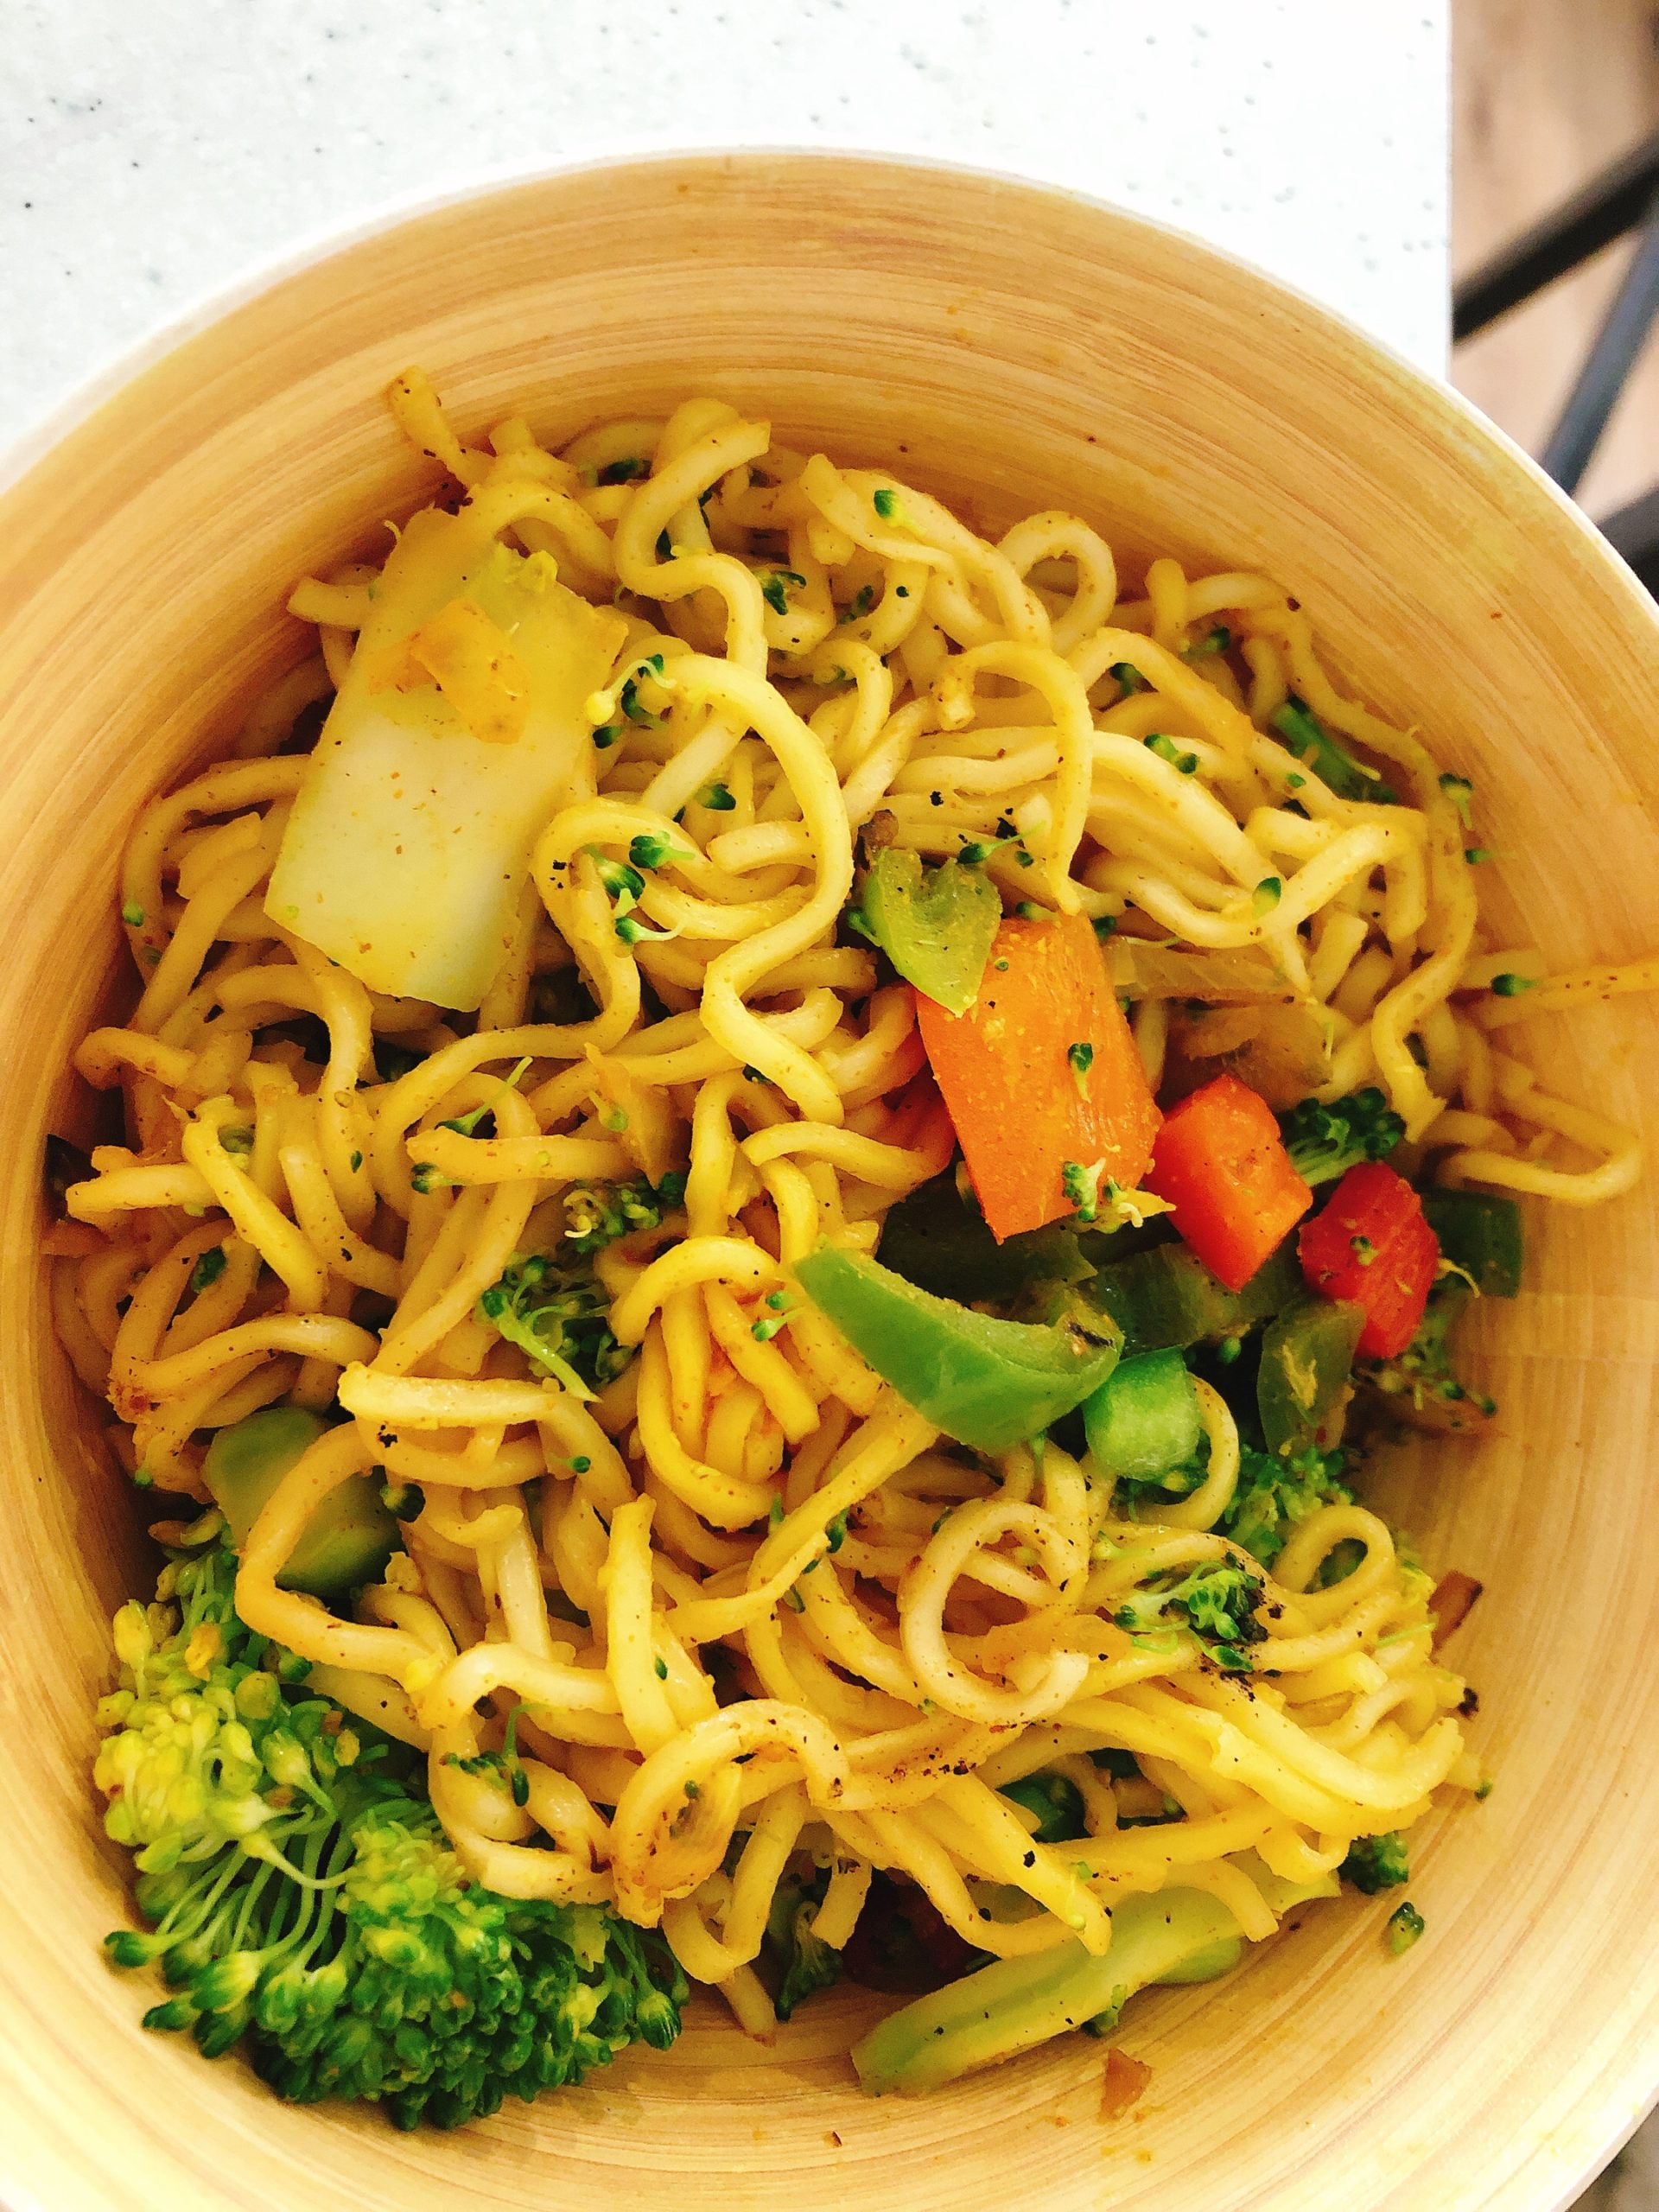 Vegan Singapore Noodles